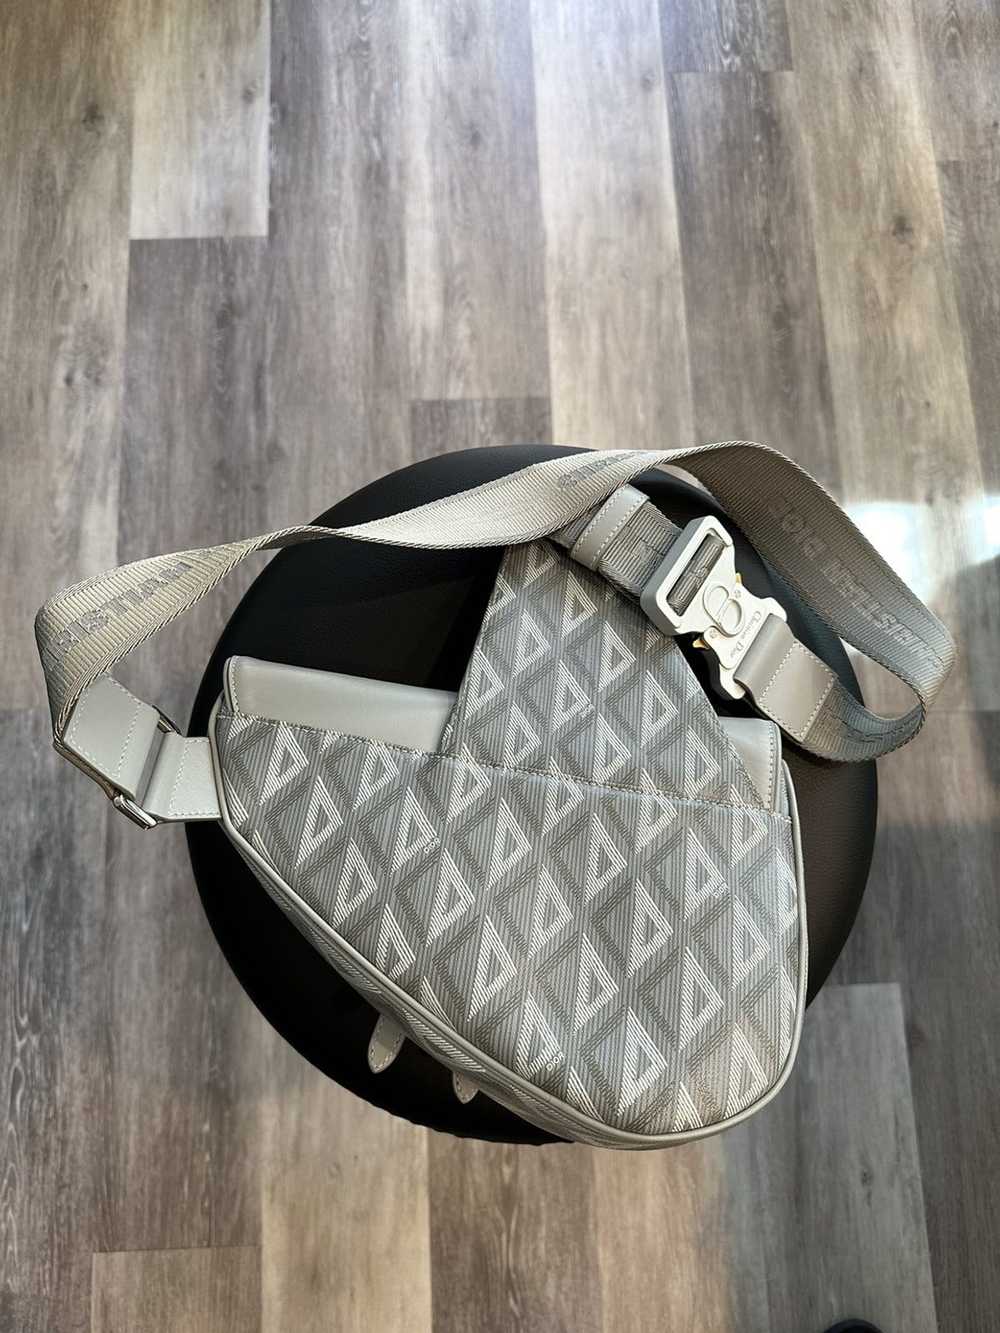 Dior Saddle bag - image 4